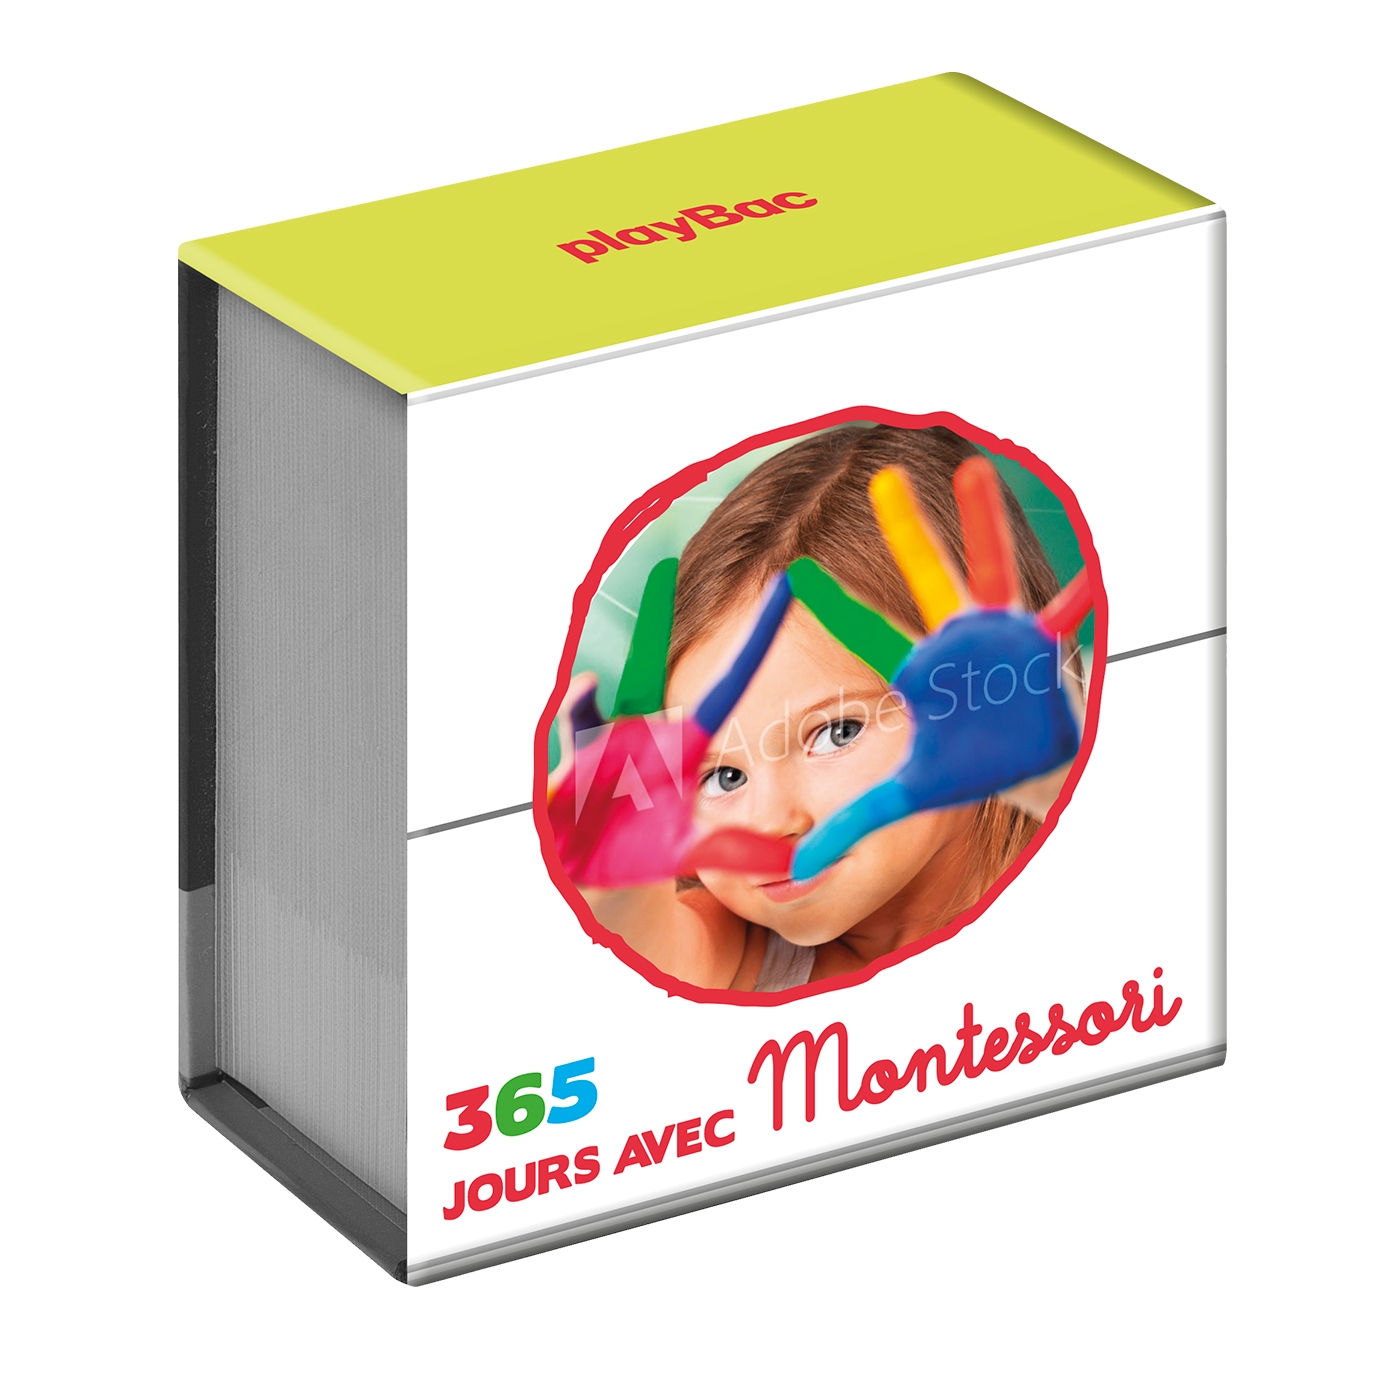 Mini calendrier - 365 jours avec Montessori - Playbac